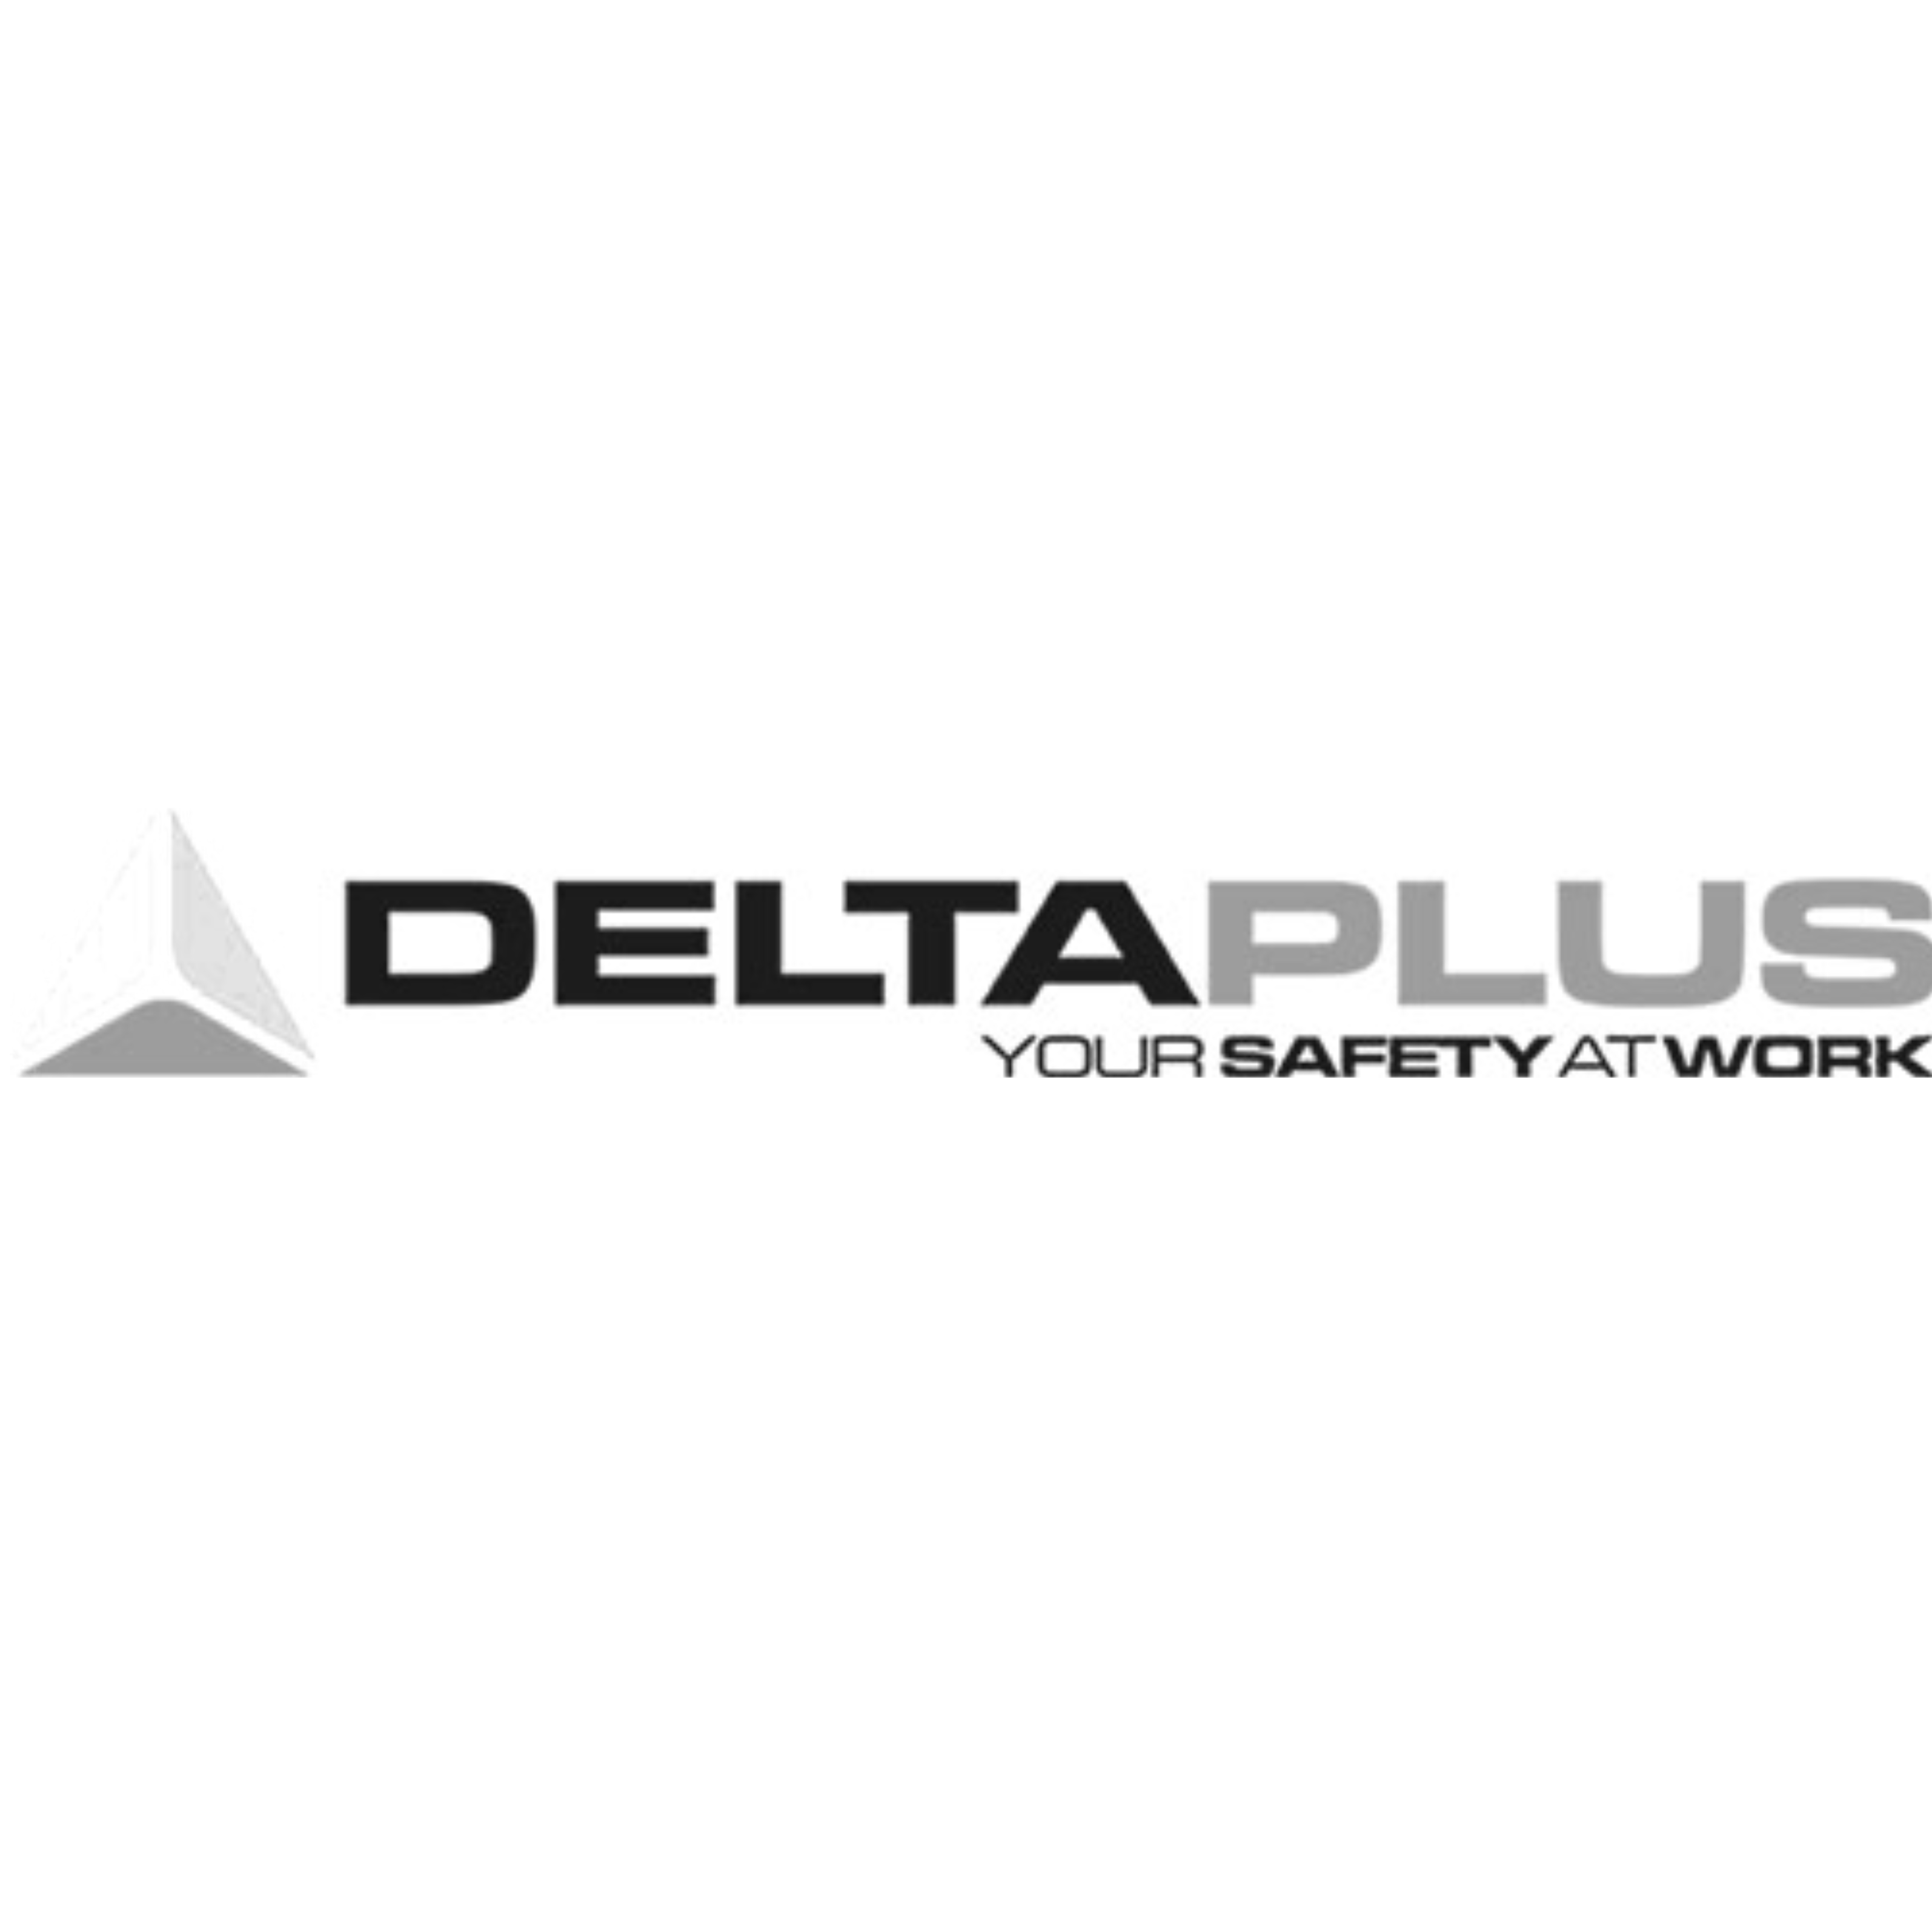 Delta Plus